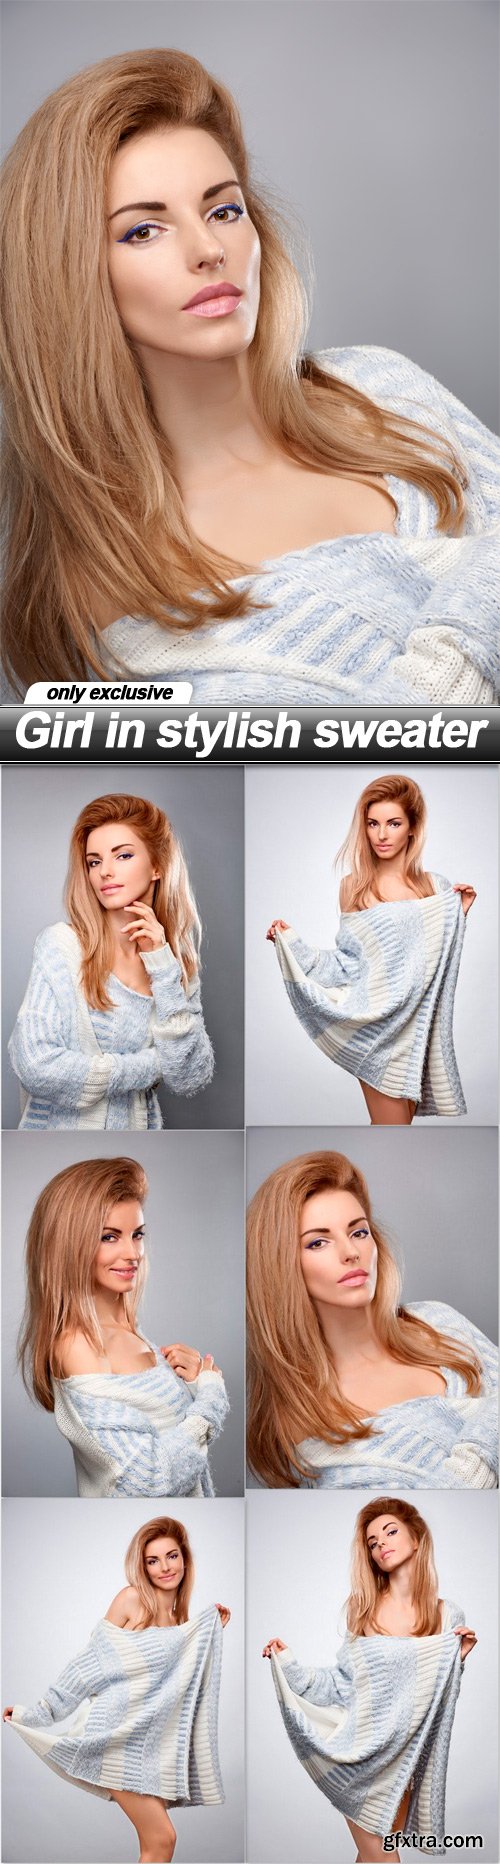 Girl in stylish sweater - 6 UHQ JPEG